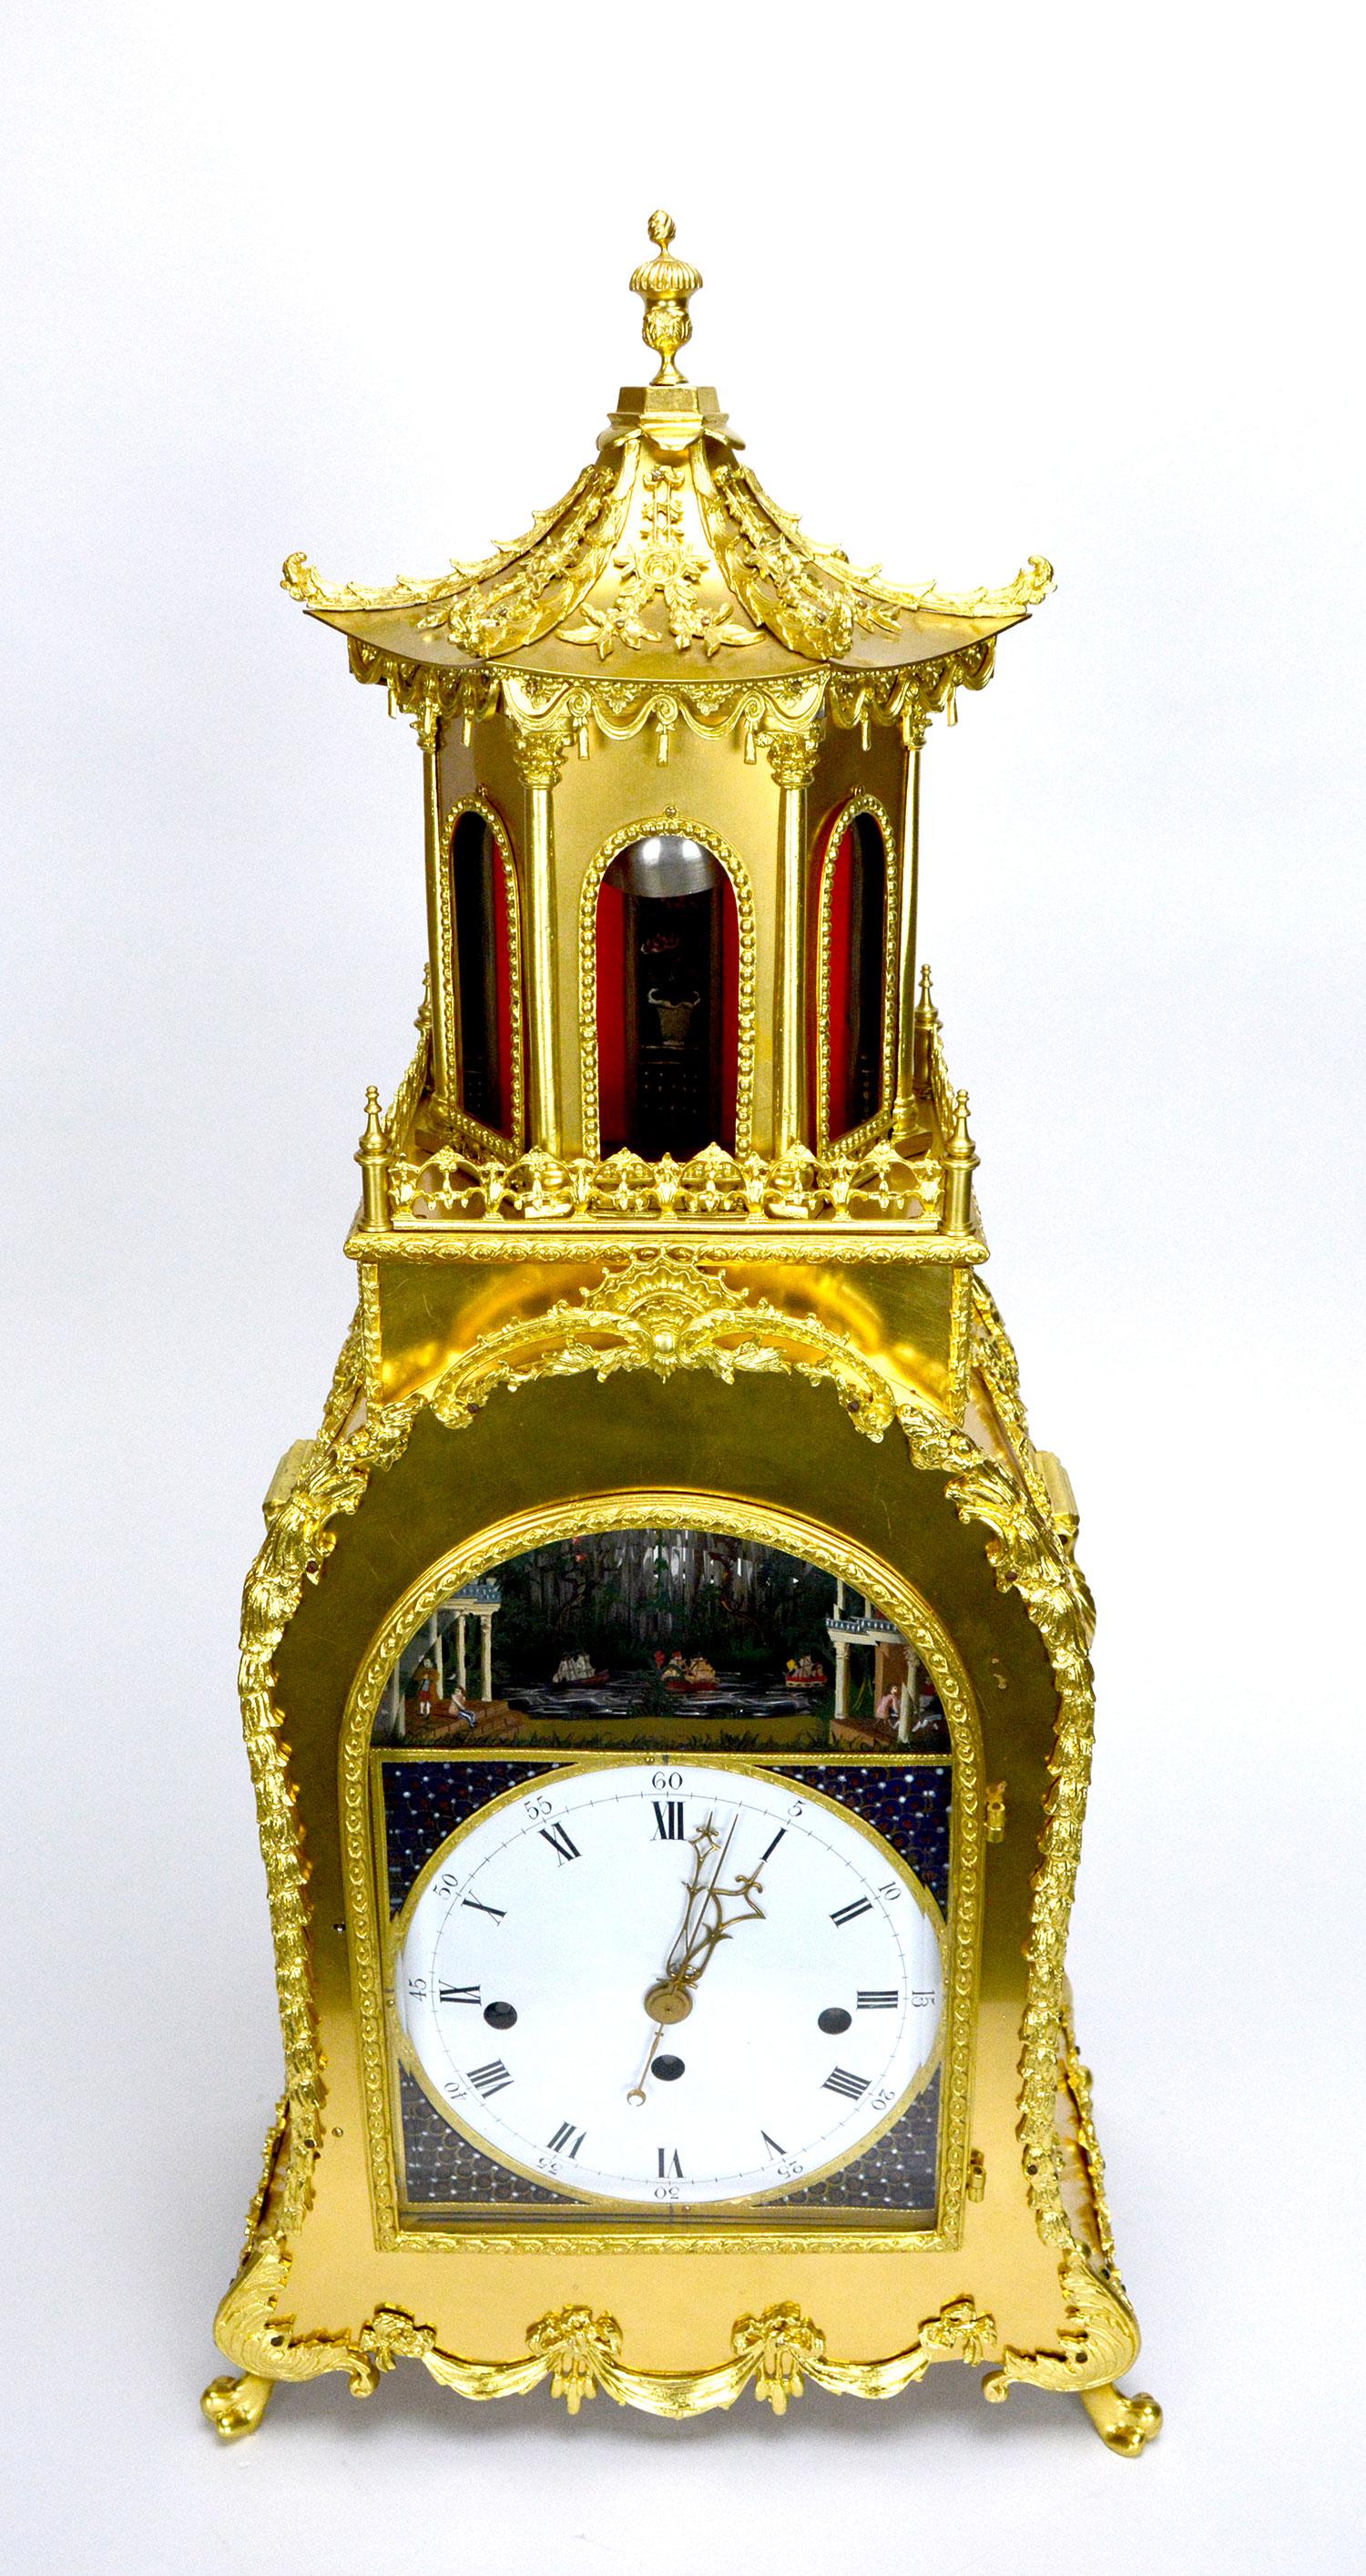 Eine große englische Automatenspieluhr im Stil von George III. Das prächtige Gehäuse aus vergoldeter Bronze ist mit schönen Applikationen aus Messingguss verziert. Eine große Pagode auf der Spitze macht das Erscheinungsbild dieser Uhr noch